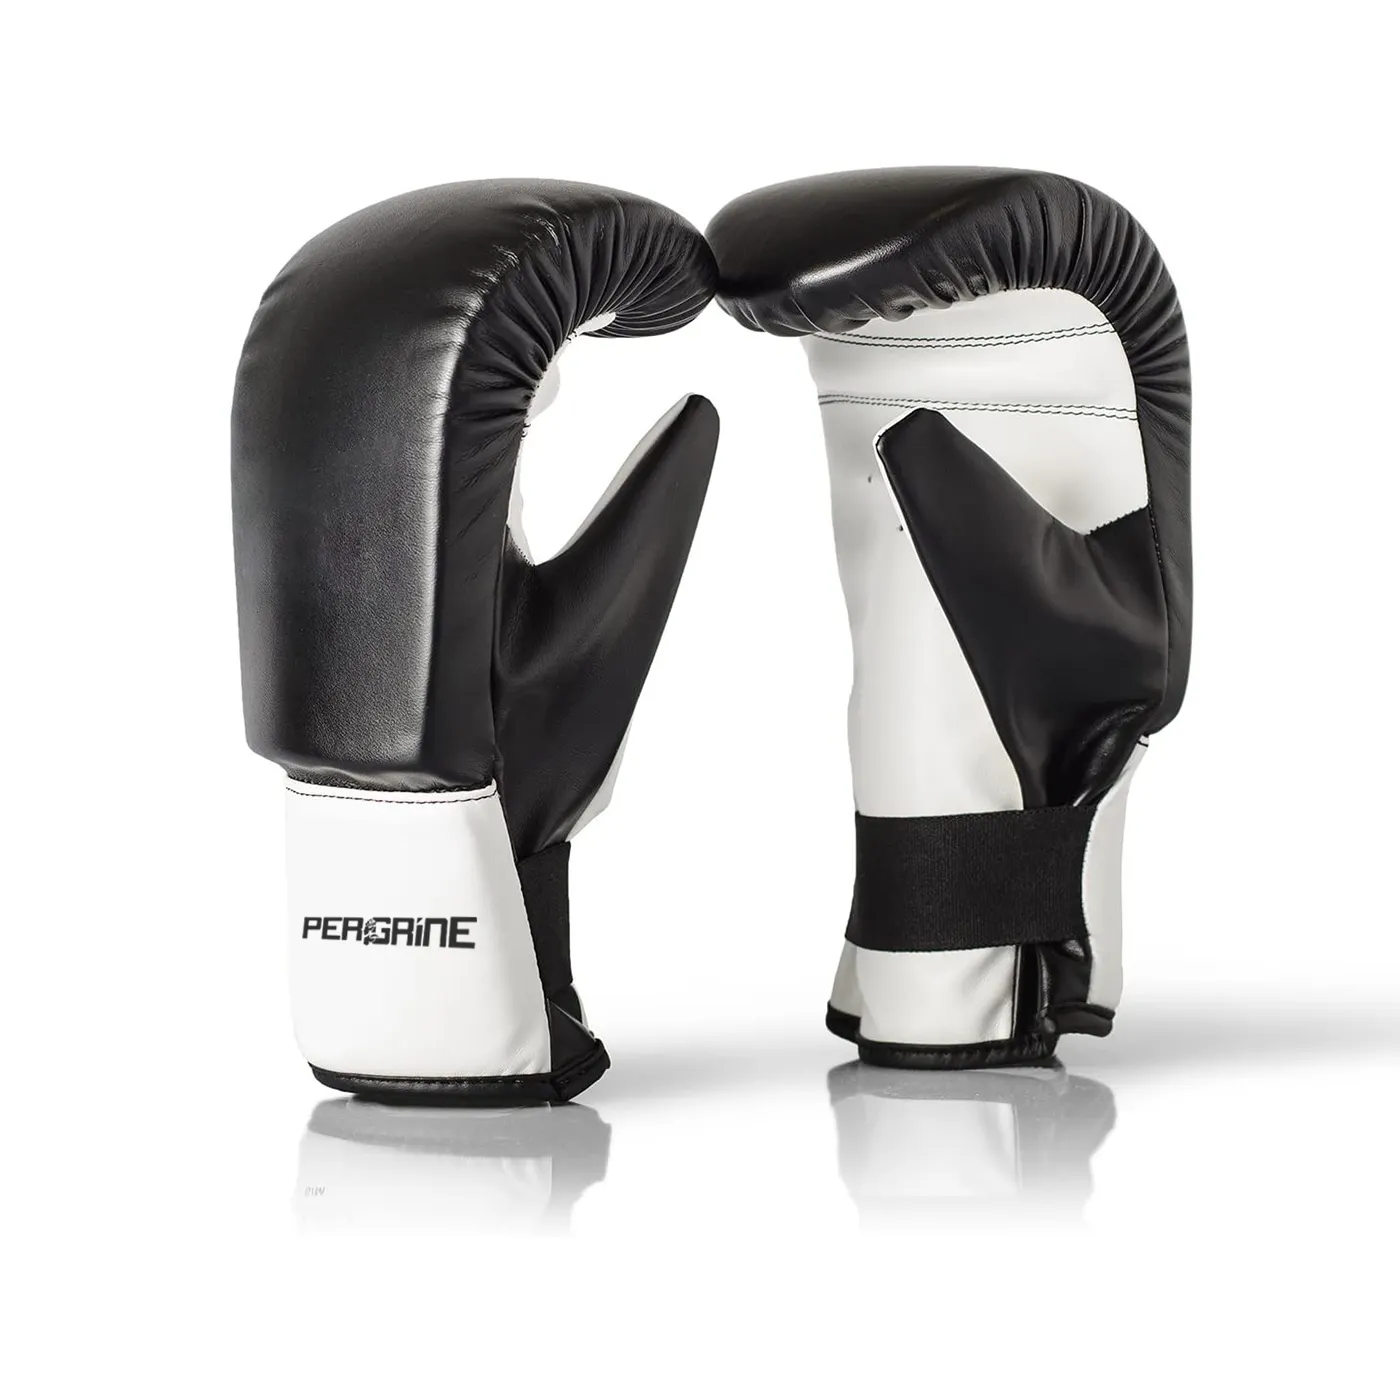 Boks torbası eldiven özel tasarım spor boks eğitim deri siyah spor kırmızı özelleştirilmiş PVC Logo MMA renk eldiveni